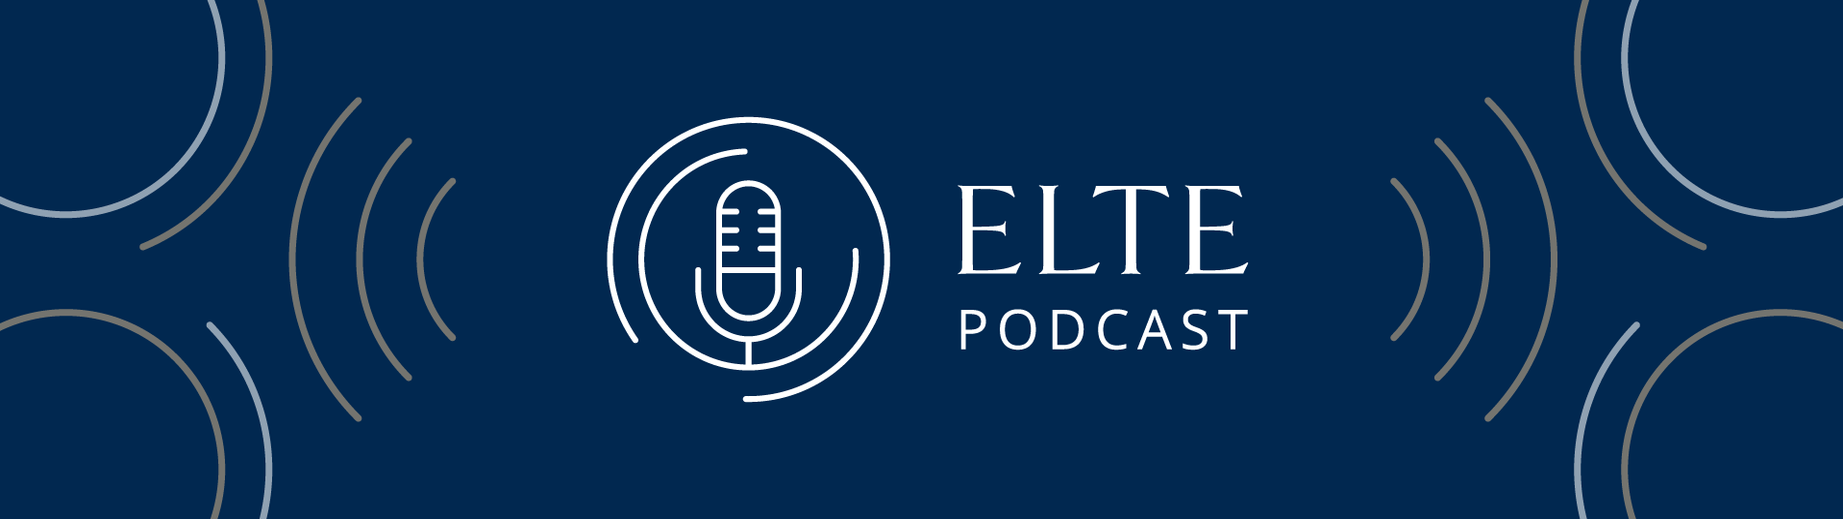 ELTE Walk Podcast